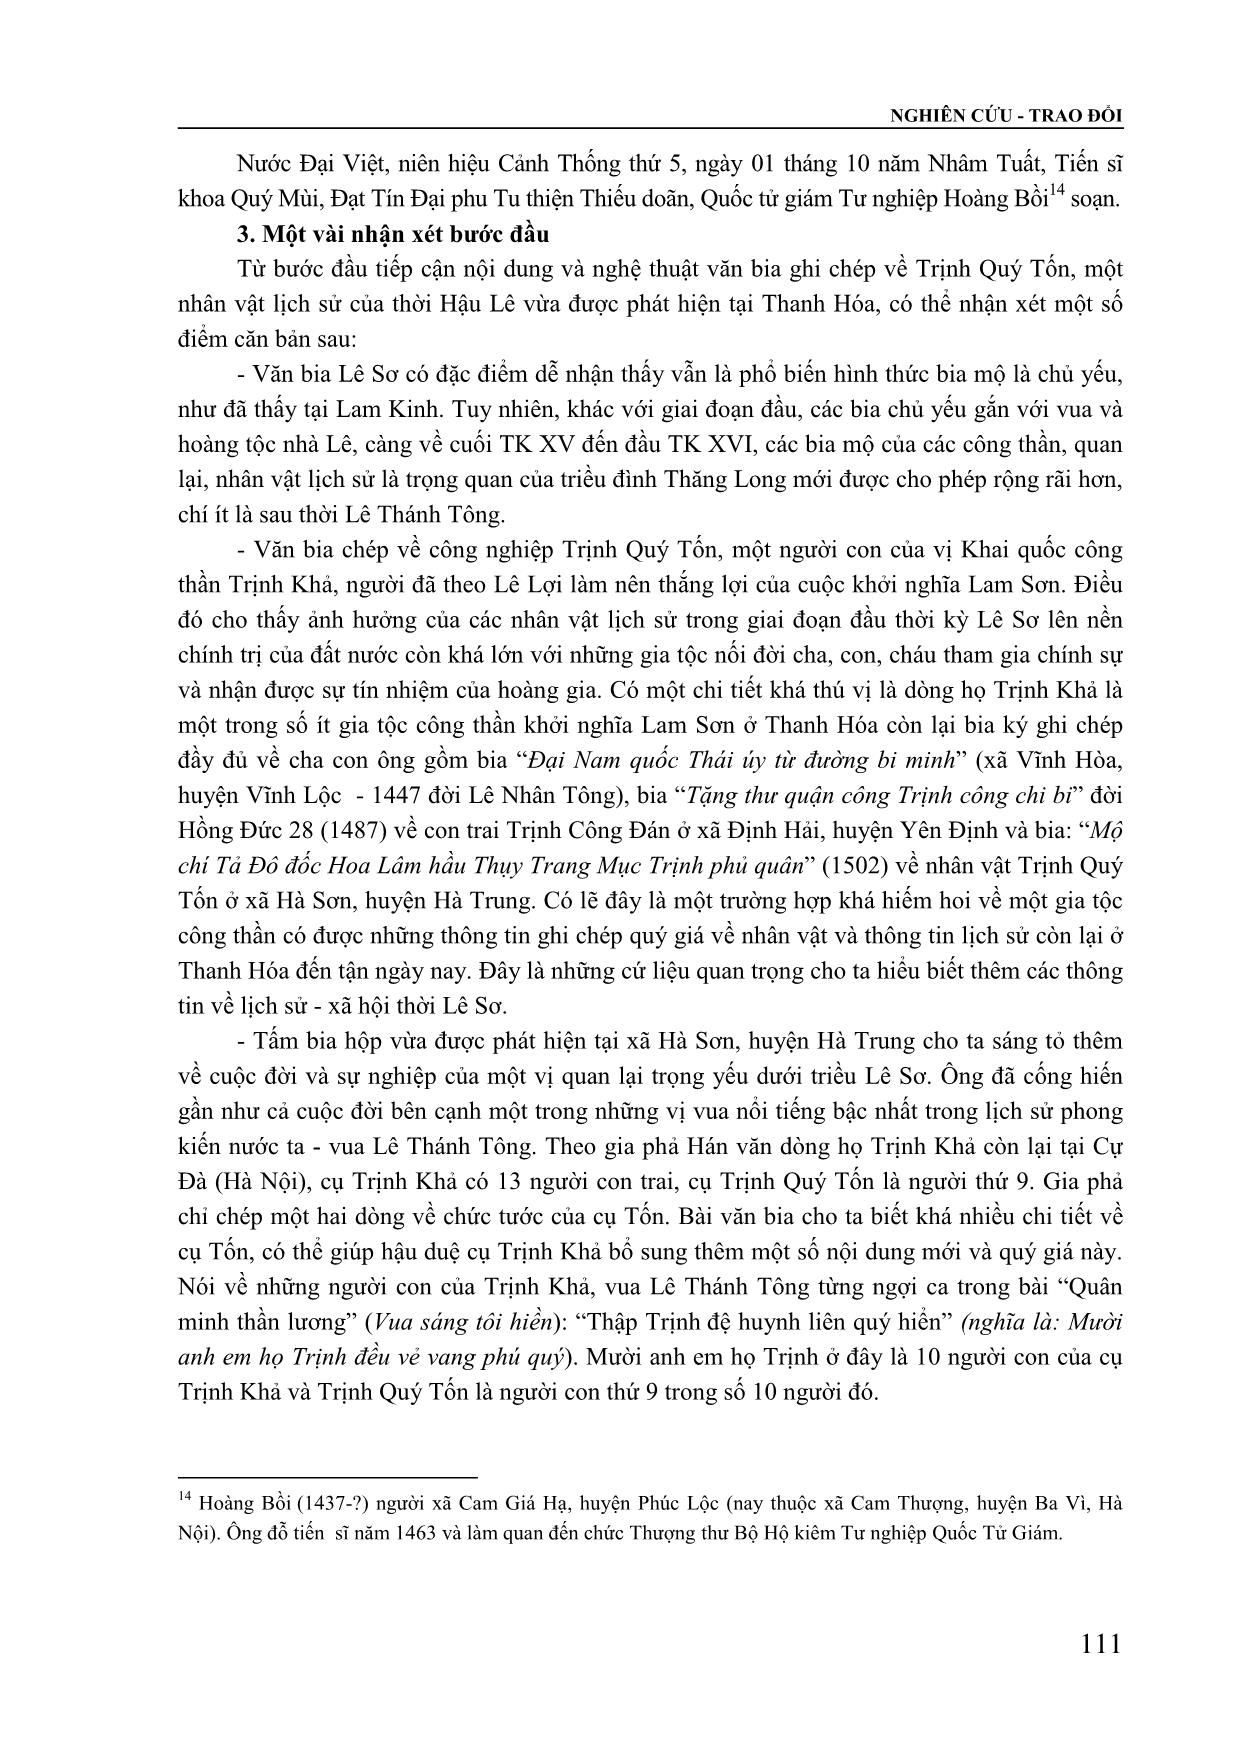 Bước đầu khảo cứu tấm bia ghi chép về nhân vật Trịnh Quý Tốn thời Hậu Lê trang 6